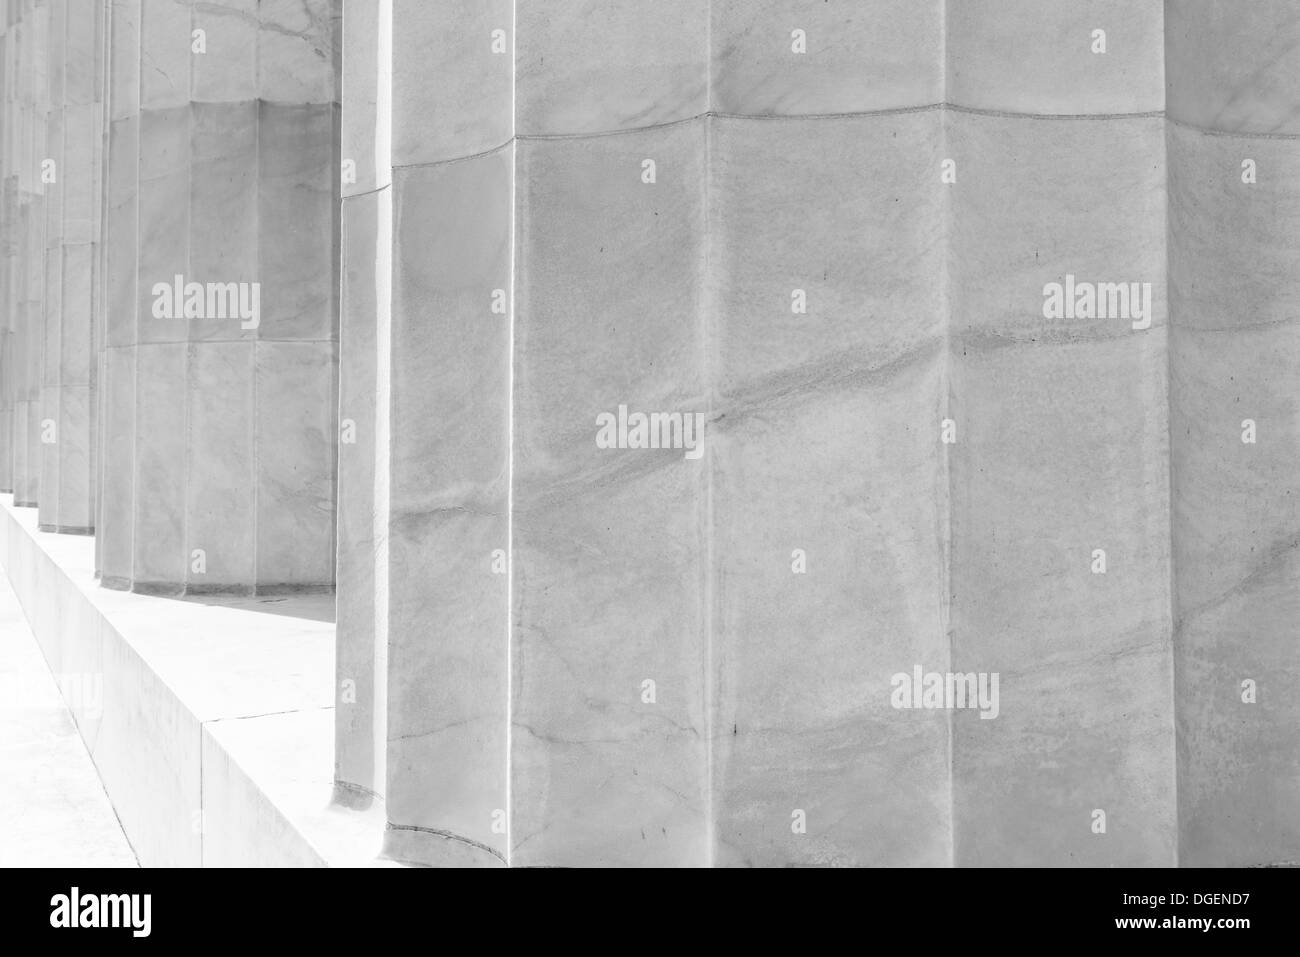 Black and White Stone Pillars Stock Photo